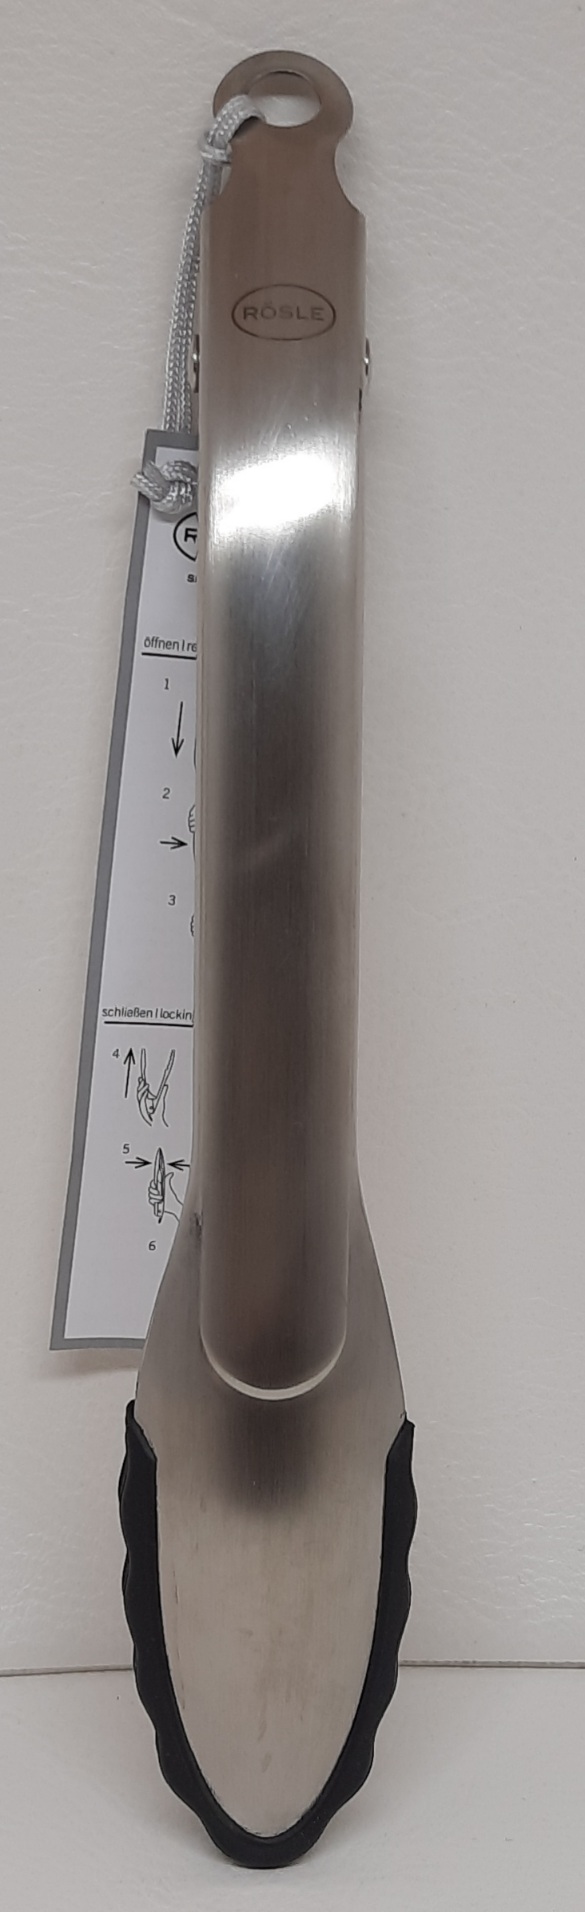 Gourmetzange 23 cm Silikonrand   patentierte Verschlusssystem,Einhandbedienung Hitzebeständig bis 220 °C,für versiegelte Pfannen